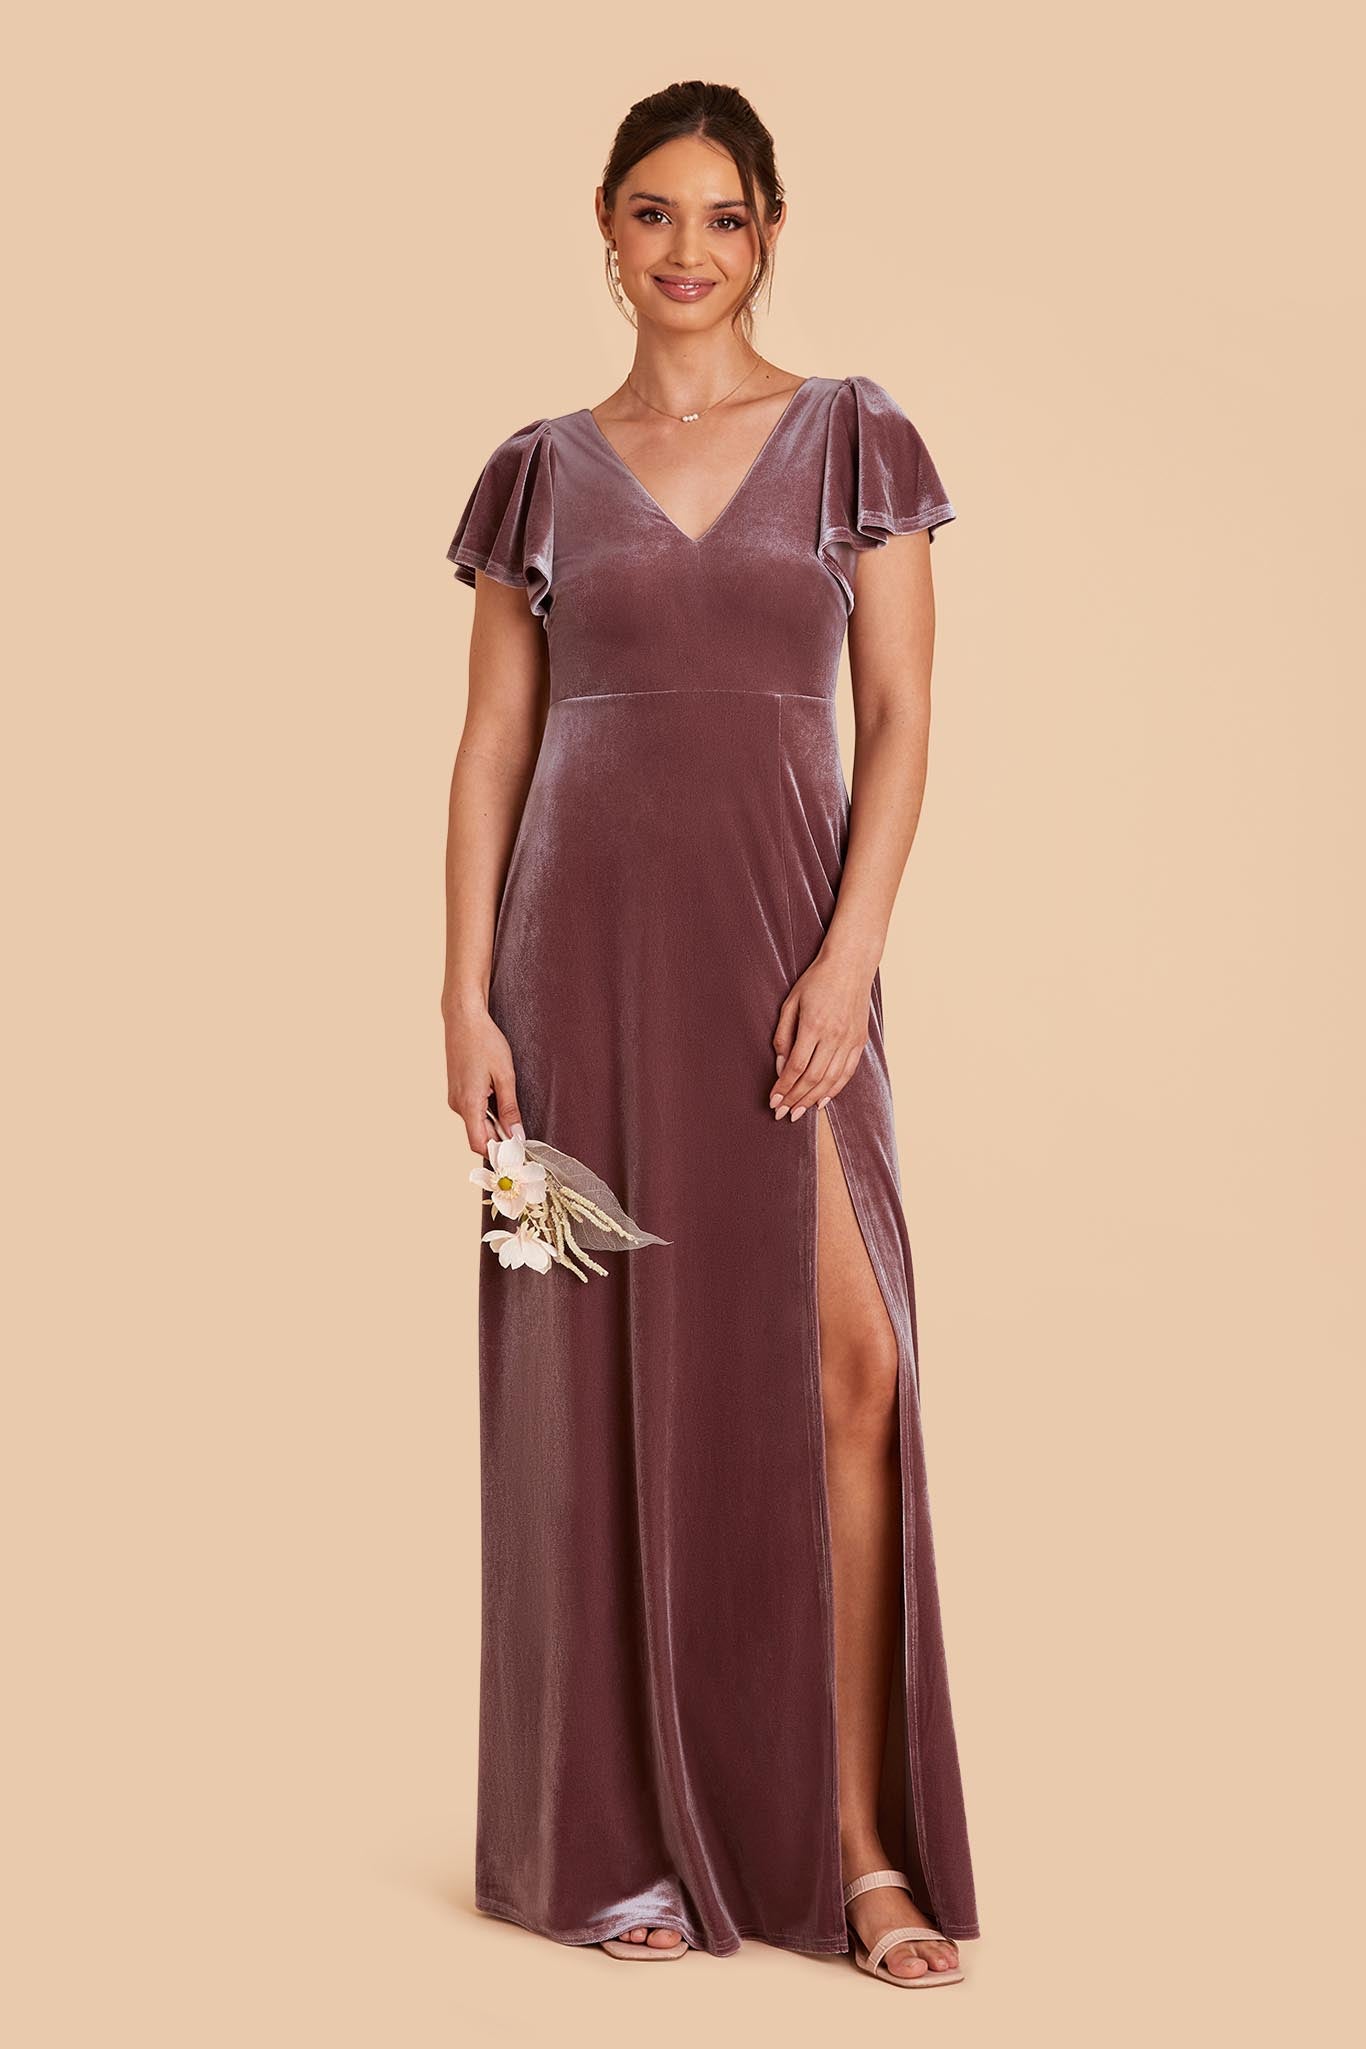 Desert Rose Hannah Velvet Dress by Birdy Grey